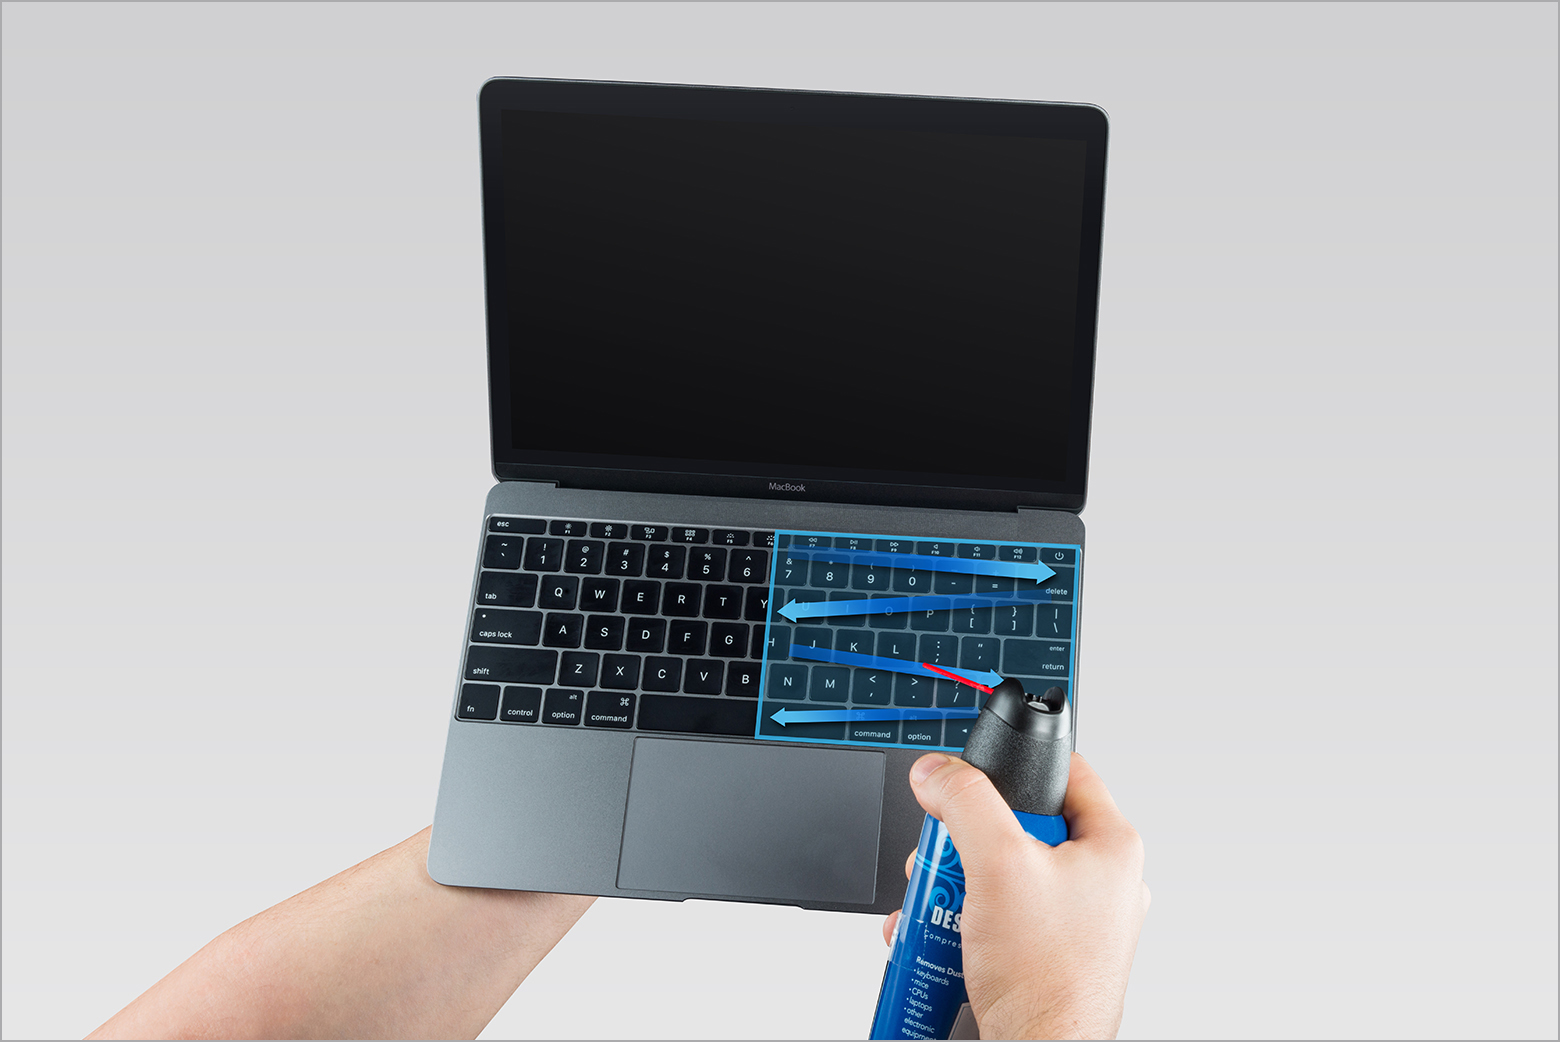 Überprüfen Sie die Kompatibilität des Tastatur-Ersatzdienstes mit Ihrem MacBook, MacBook Air oder Ihrer mechanischen Tastatur.
Stellen Sie sicher, dass Sie die richtige Ersatztastatur für Ihr Gerät auswählen.